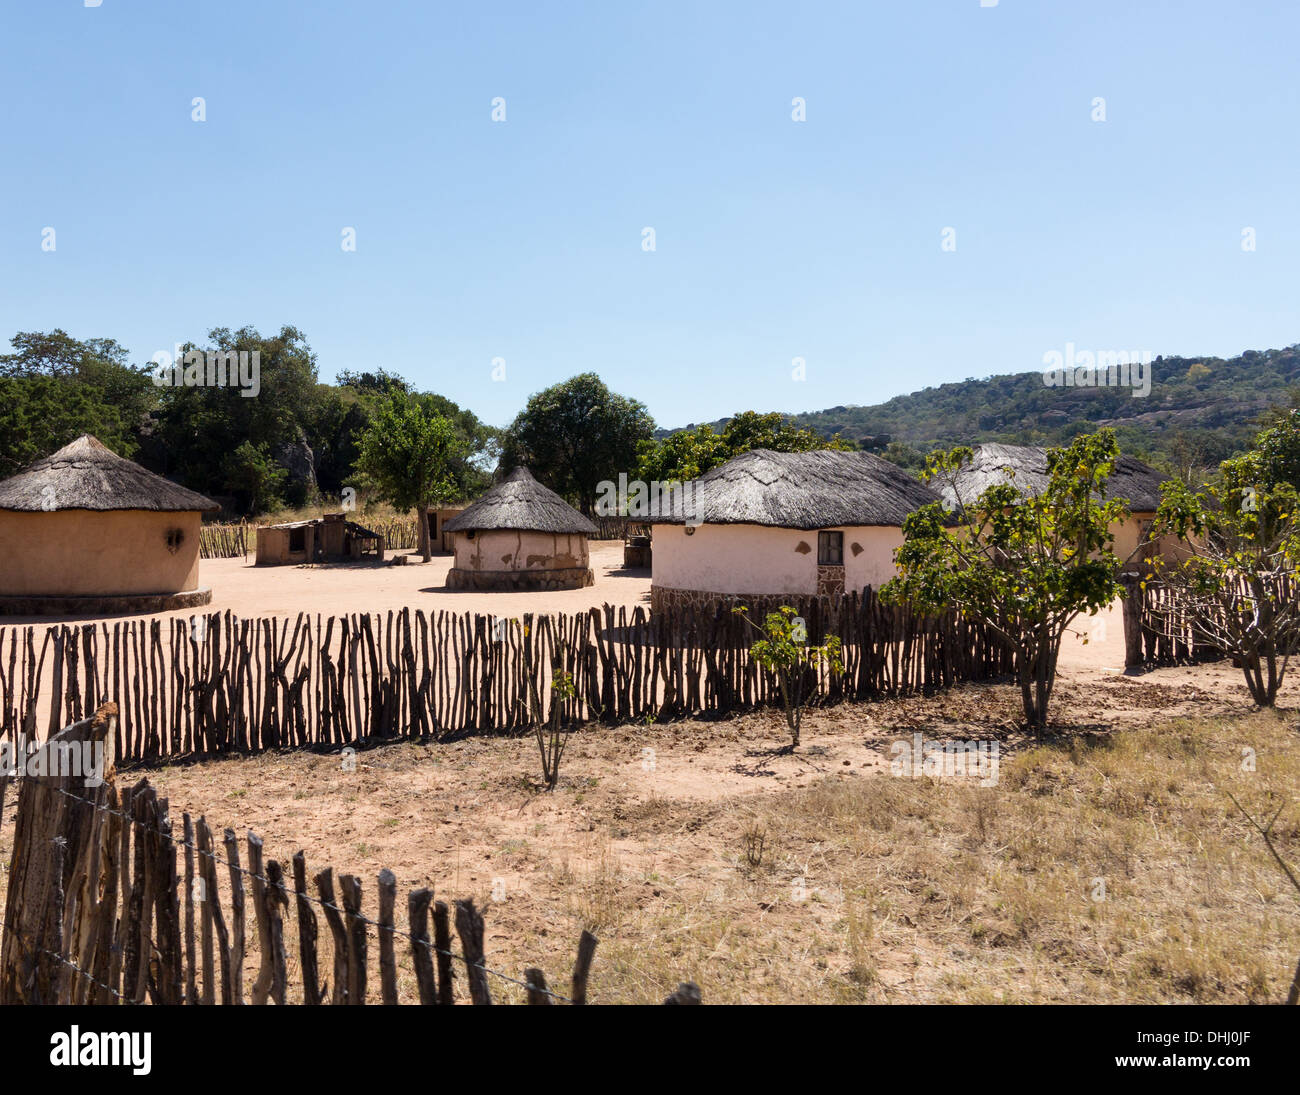 Vista de casas de barro con techo de paja en un típico pueblo africano en Zimbabwe, África Foto de stock